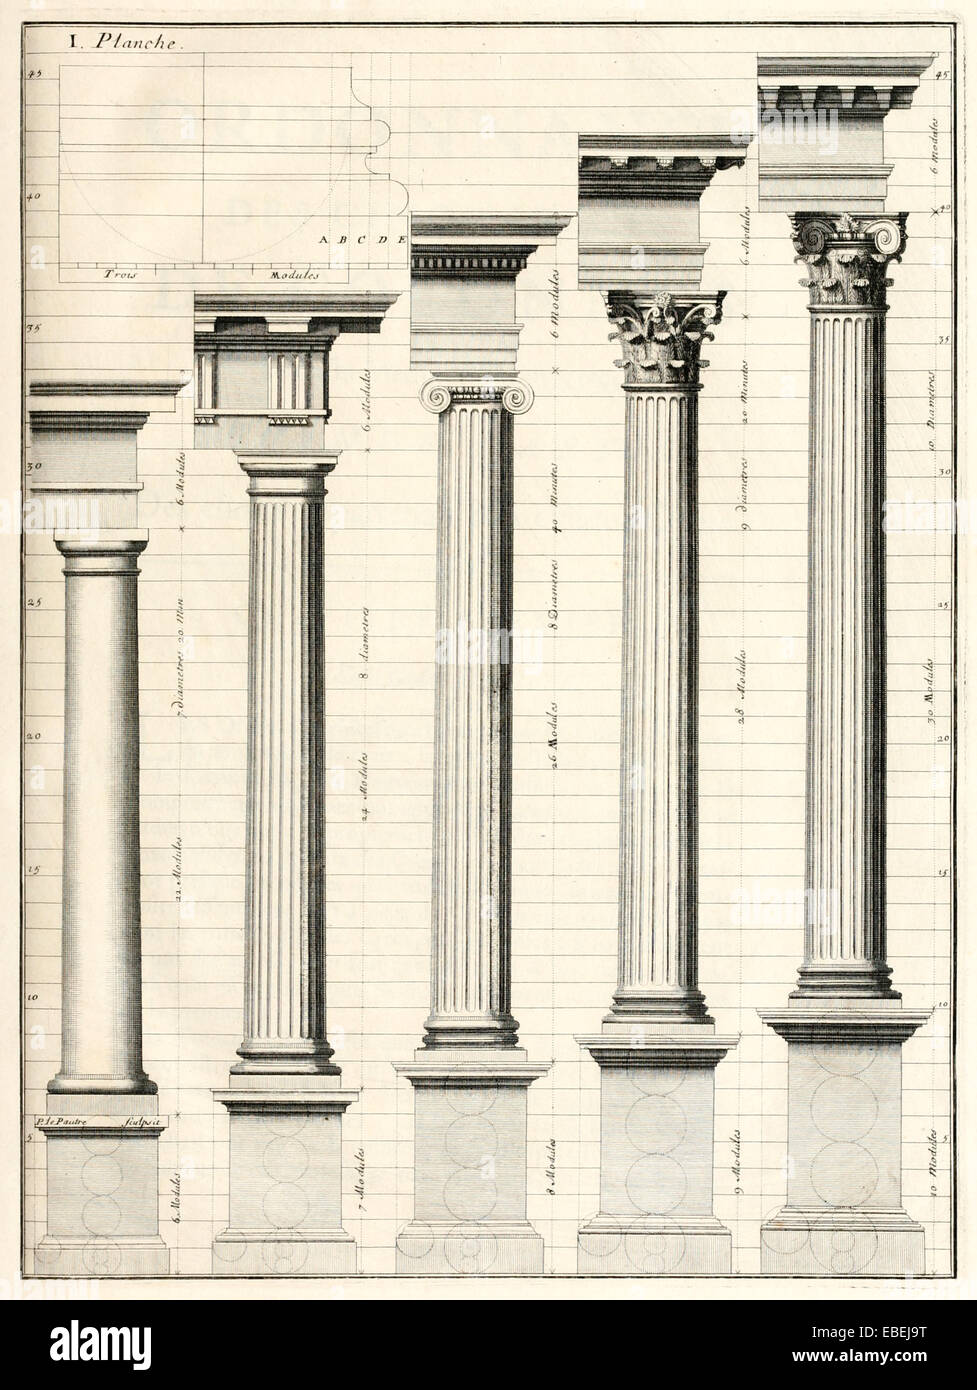 Klassische Reihenfolge der Spalten von Claude Perrault, französischer Renaissance-Architekten-Abbildung. Siehe Beschreibung für mehr Informationen. Stockfoto